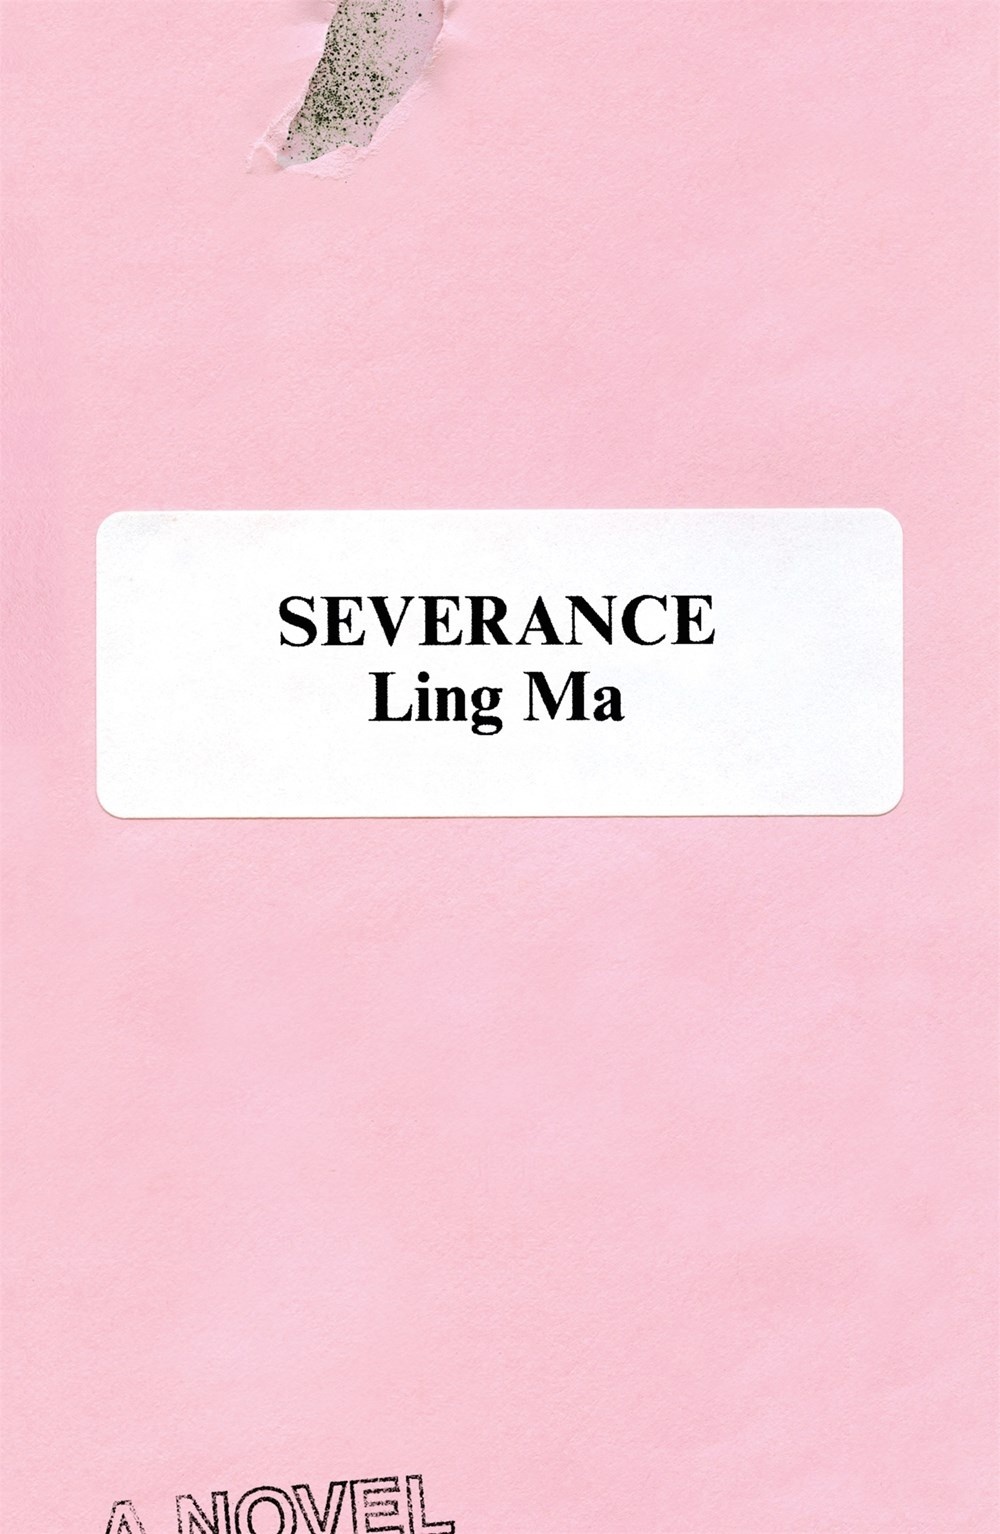 Severance, A Novel